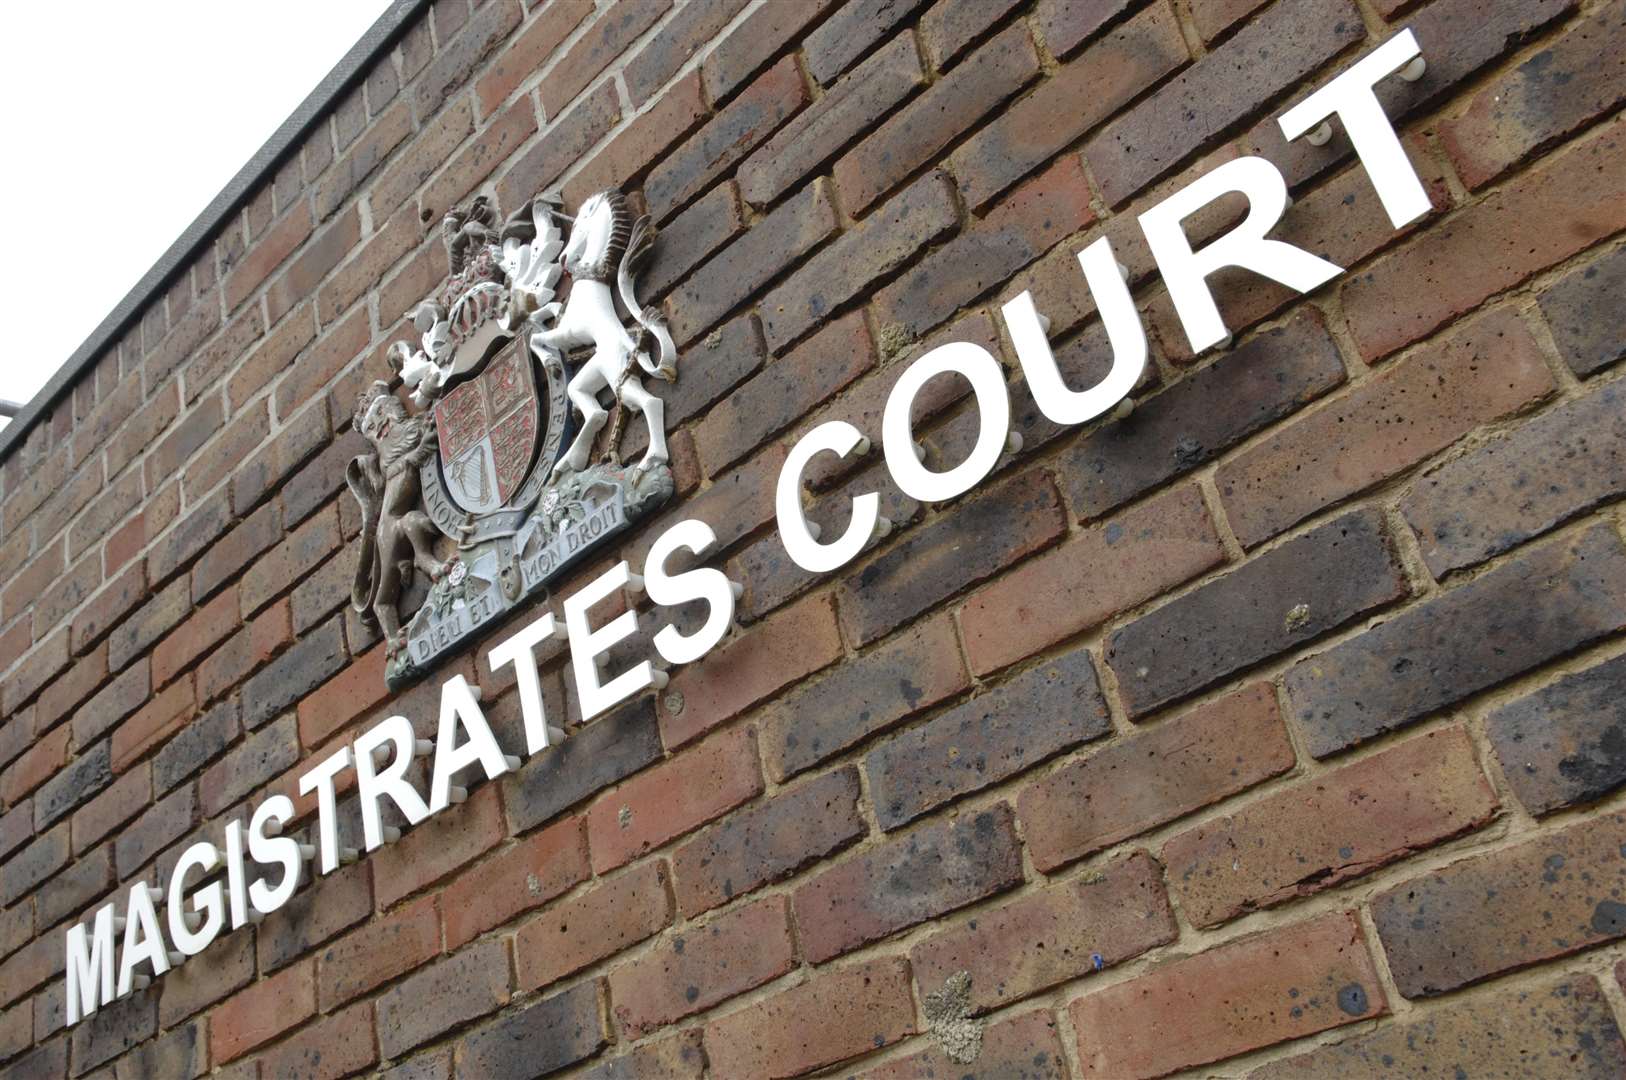 Sevenoaks Magistrates Court